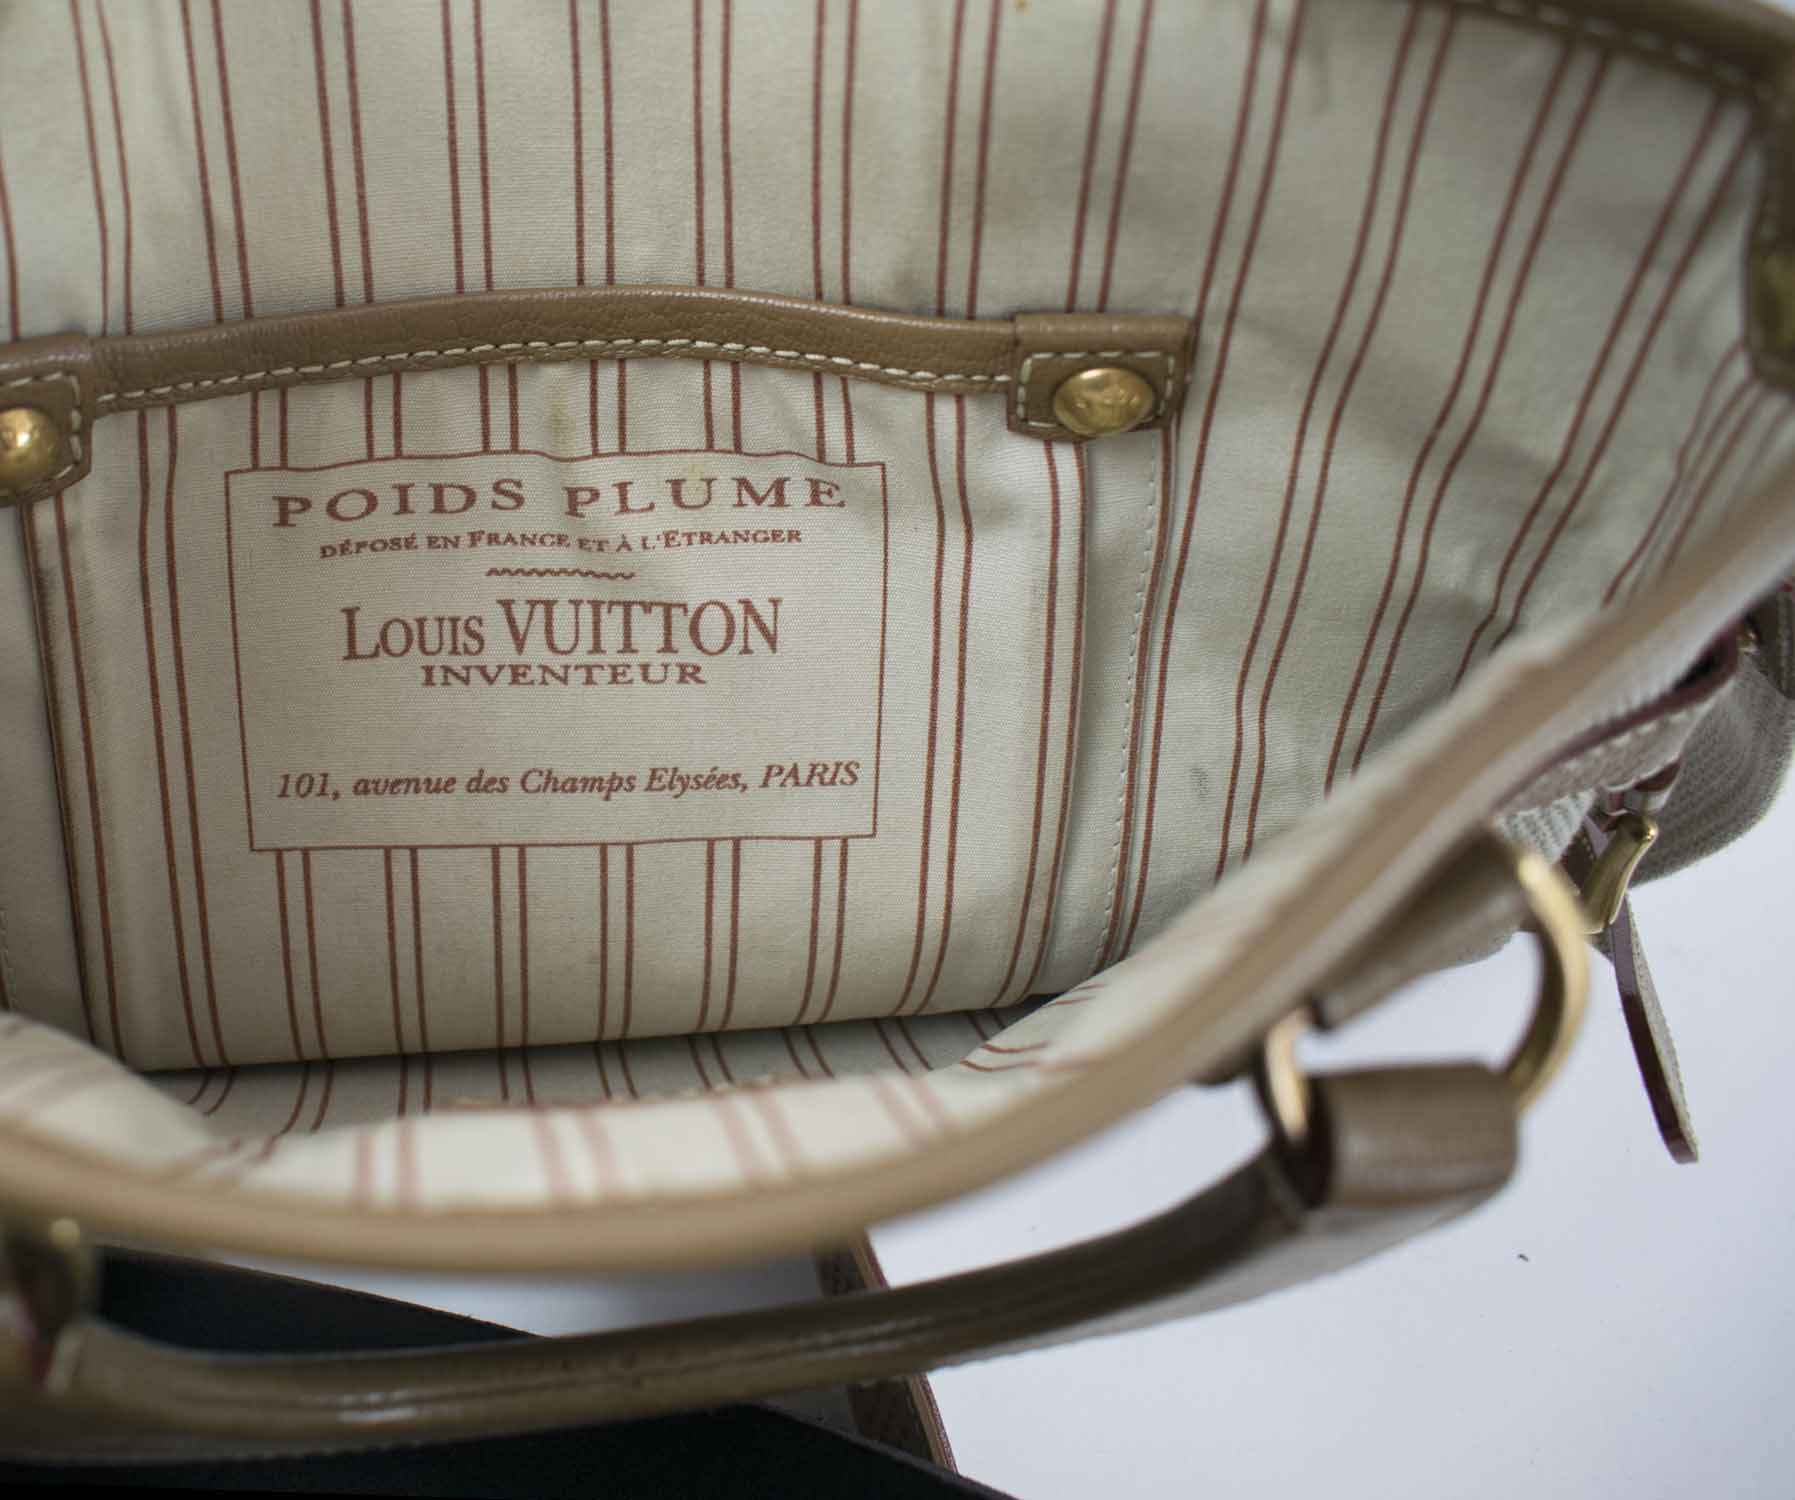 Sold at Auction: Damentasche Louis Vuitton, Paris